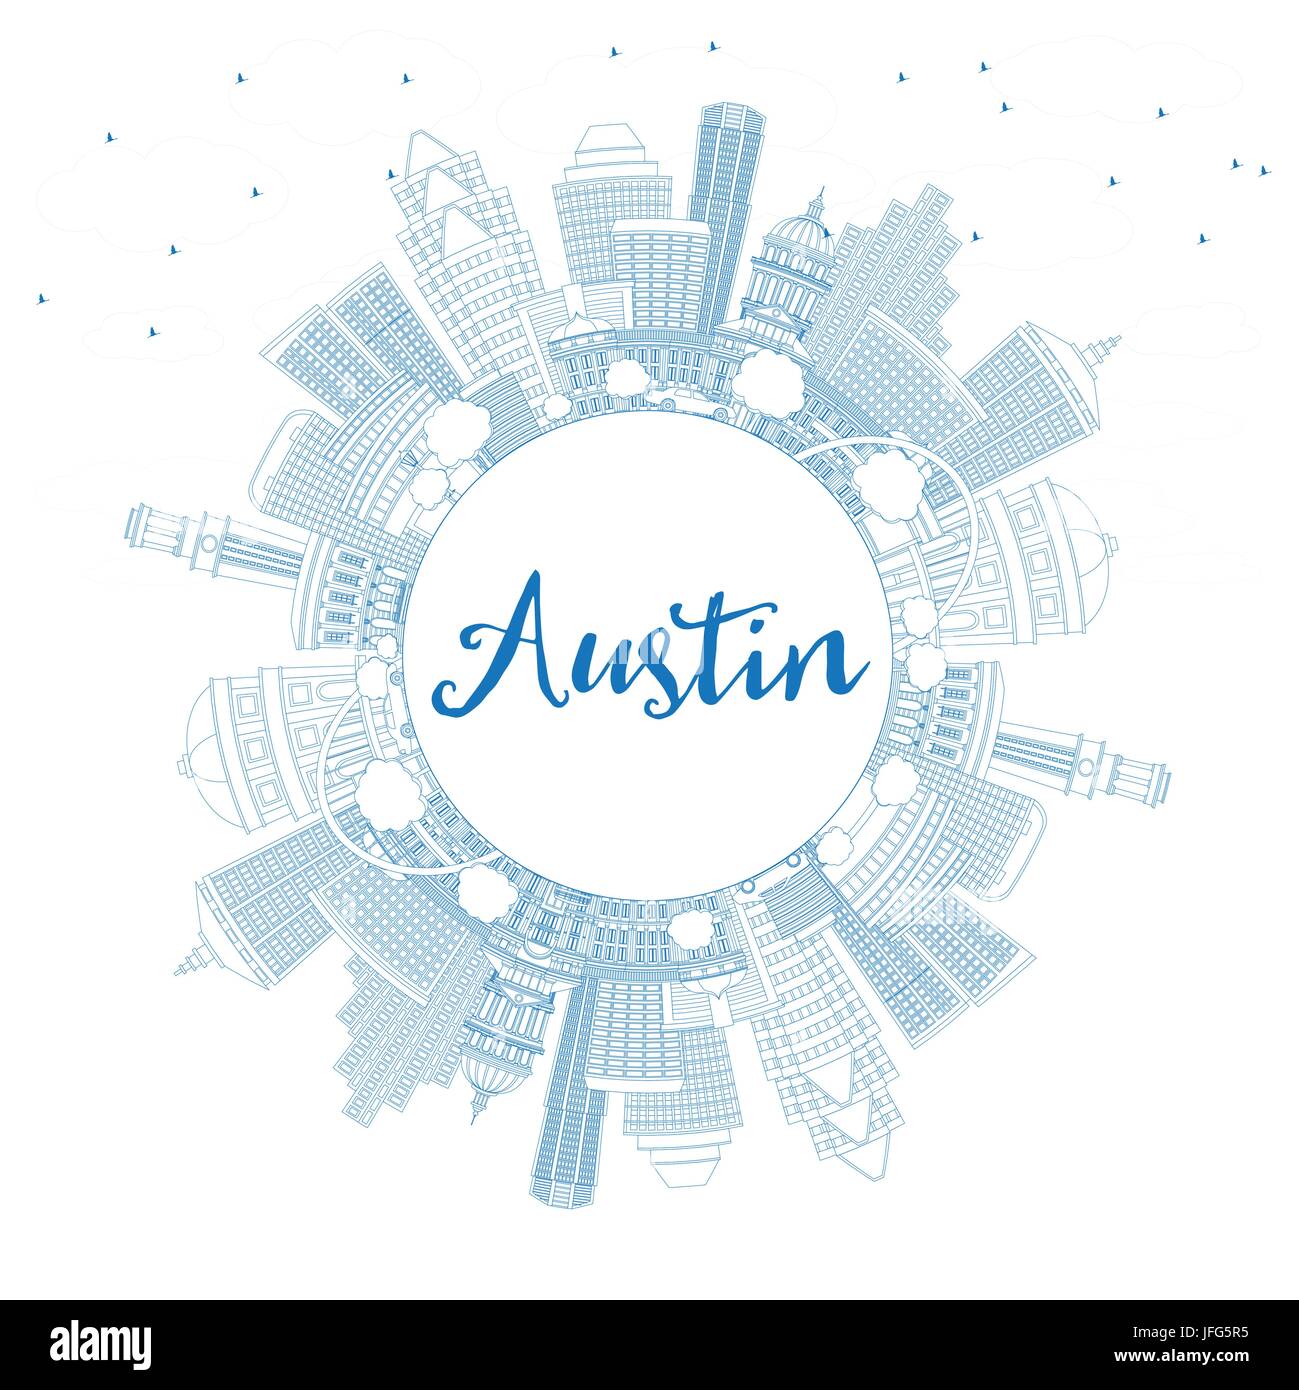 Umriss Austin mit blauen Gebäuden und textfreiraum Skyline. Vektor-Illustration. Geschäftsreisen und Tourismus-Konzept mit moderner Architektur. Stock Vektor